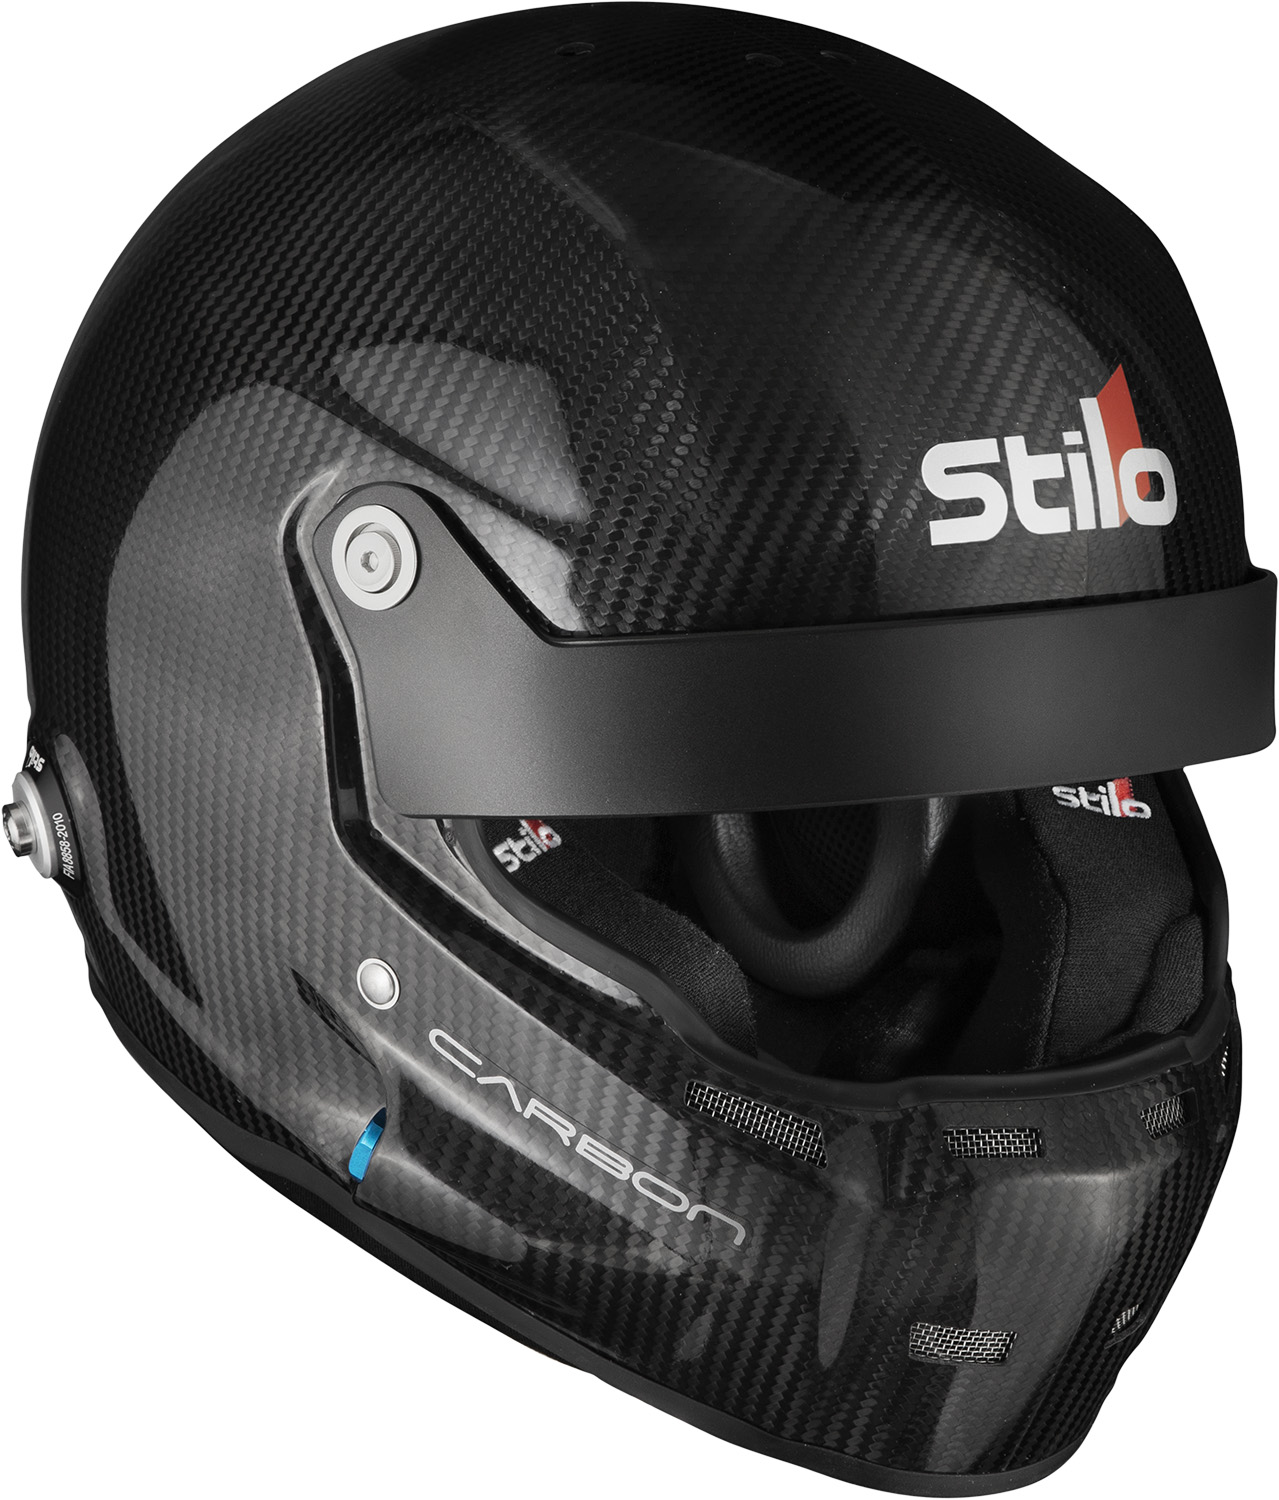 Stilo Helm ST5R Carbon WL